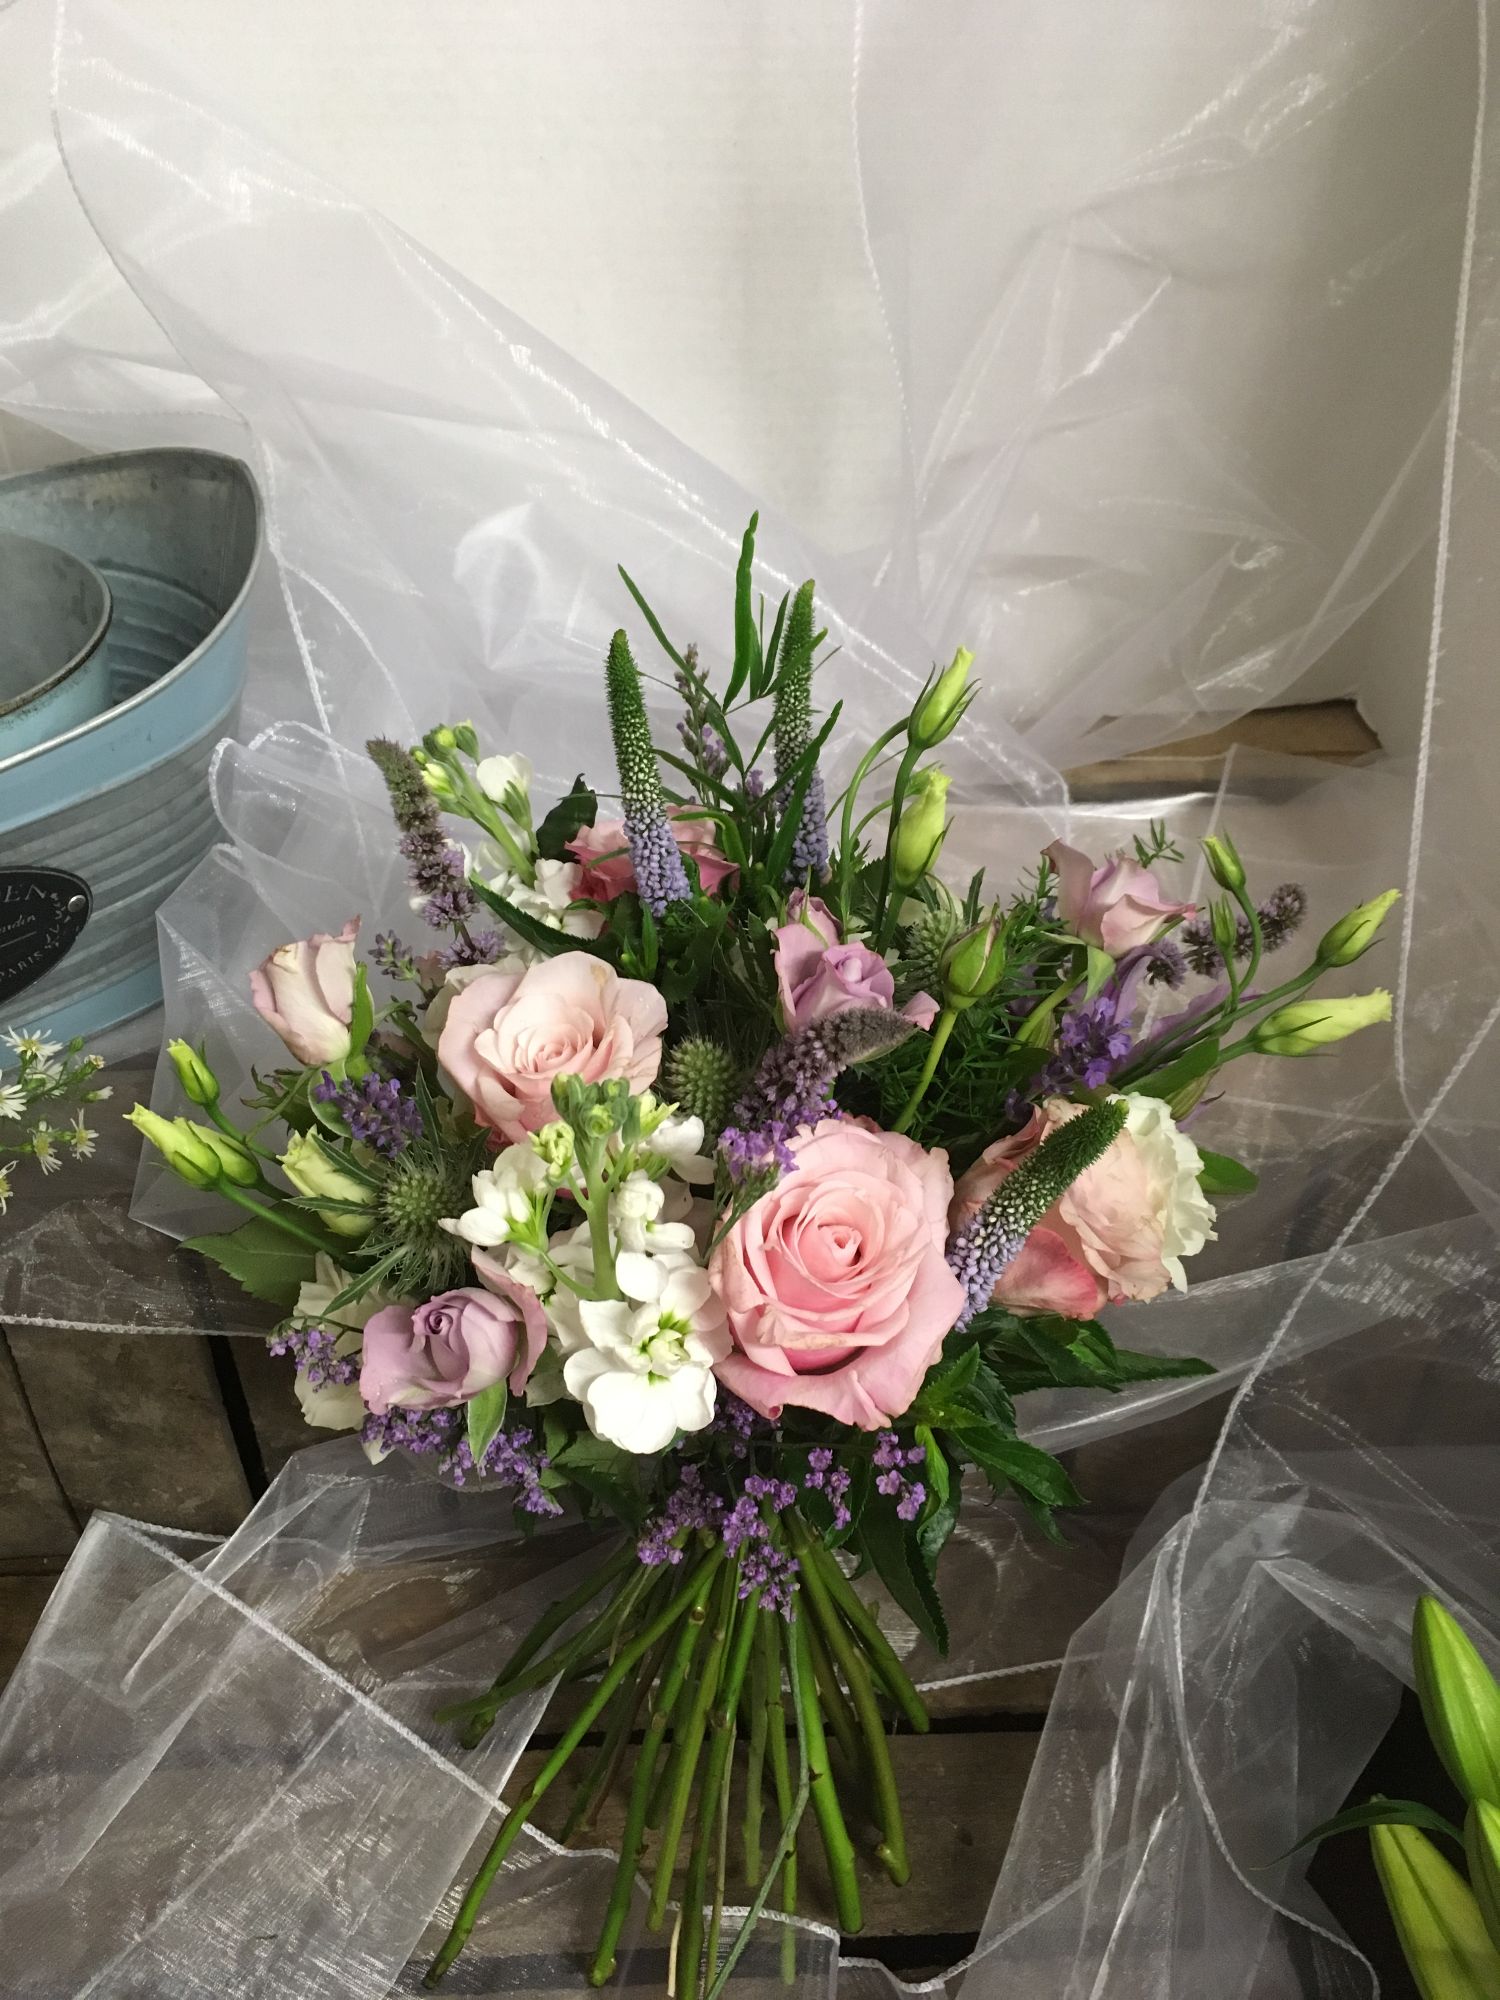 aylesbury wedding florist willow house flowers wedding flowers gallery ...